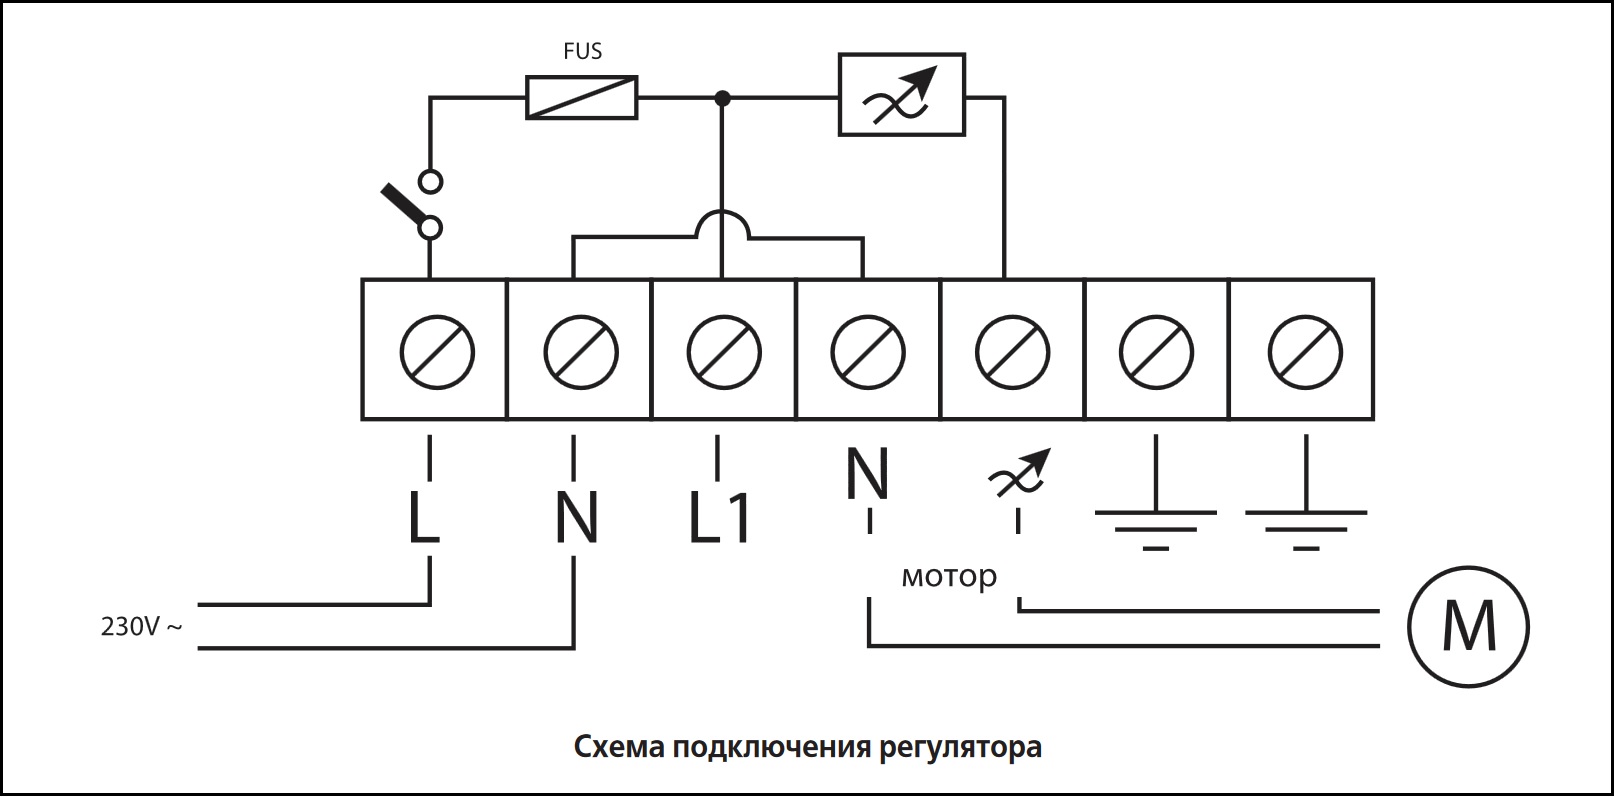 Схема подключения регулятора скорости ВЕНТС РС-5,0-Т